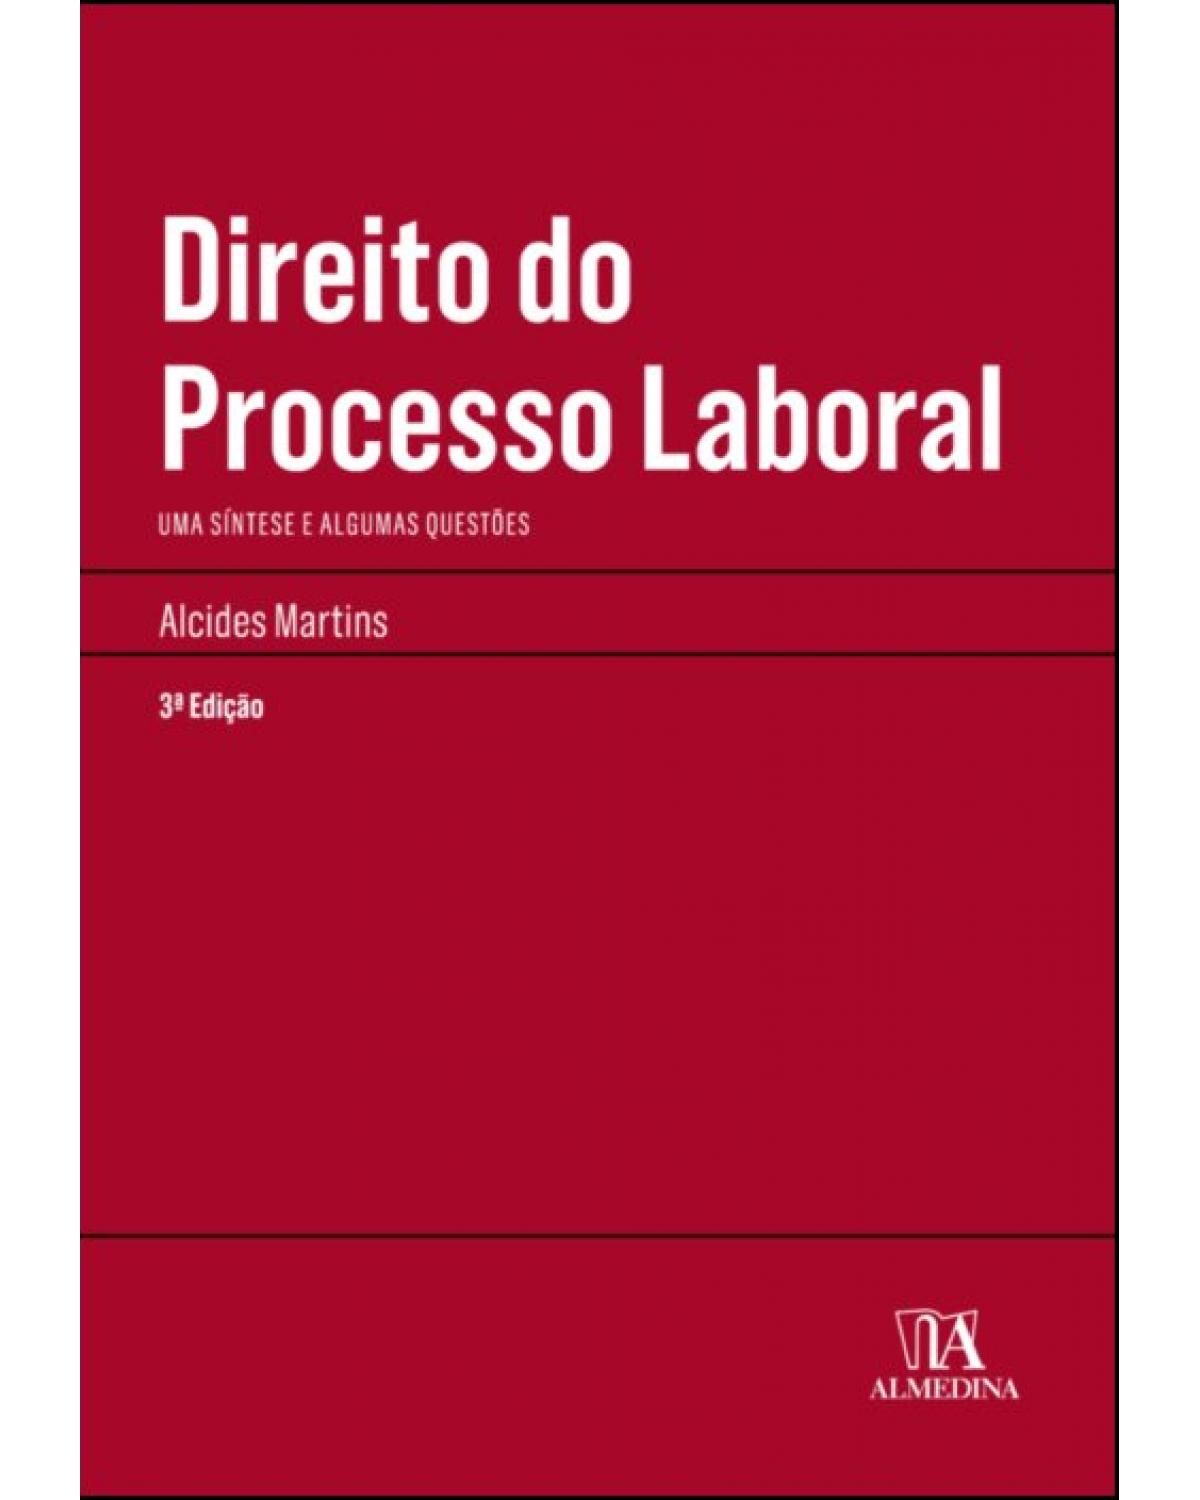 Direito do processo laboral: uma síntese e algumas questões - 3ª Edição | 2018